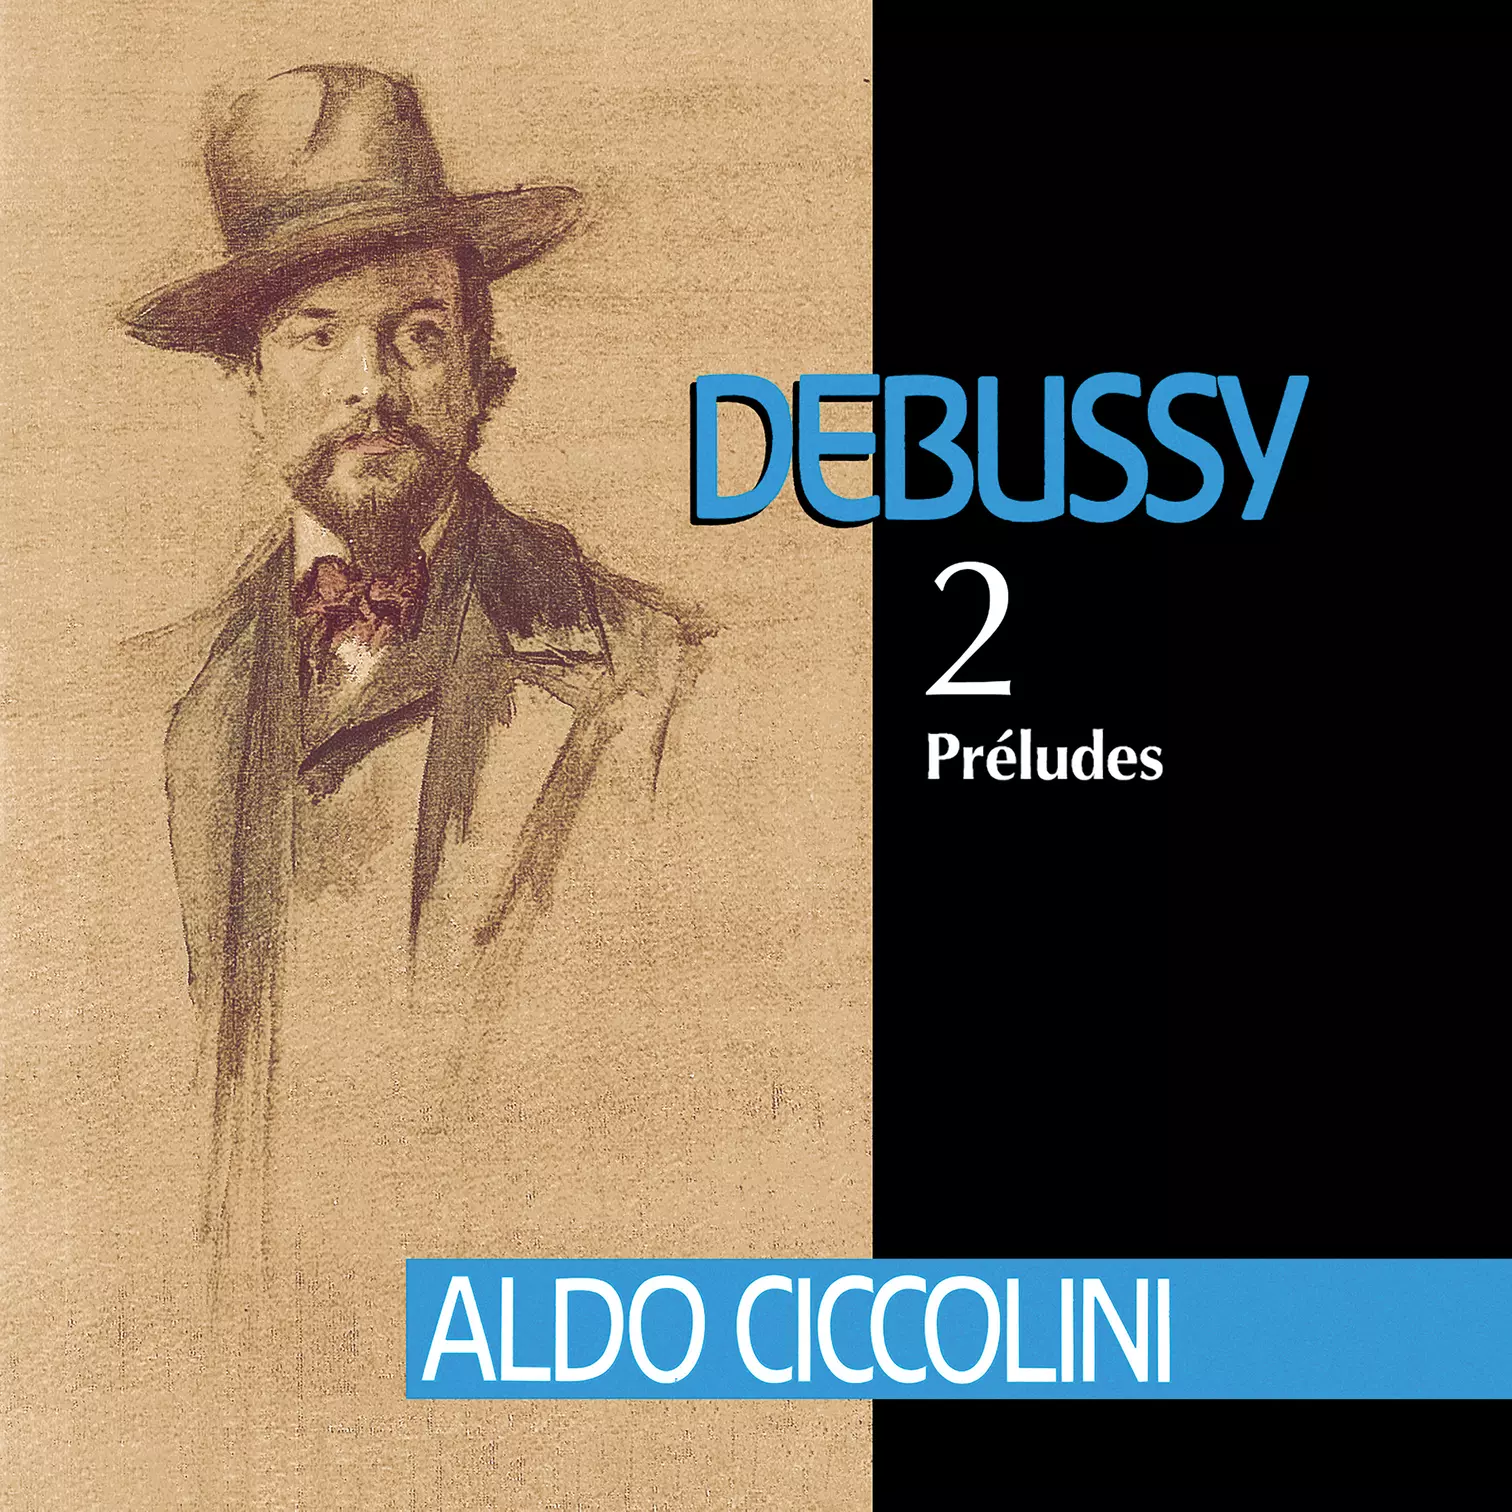 Debussy: Préludes Aldo Ciccolini